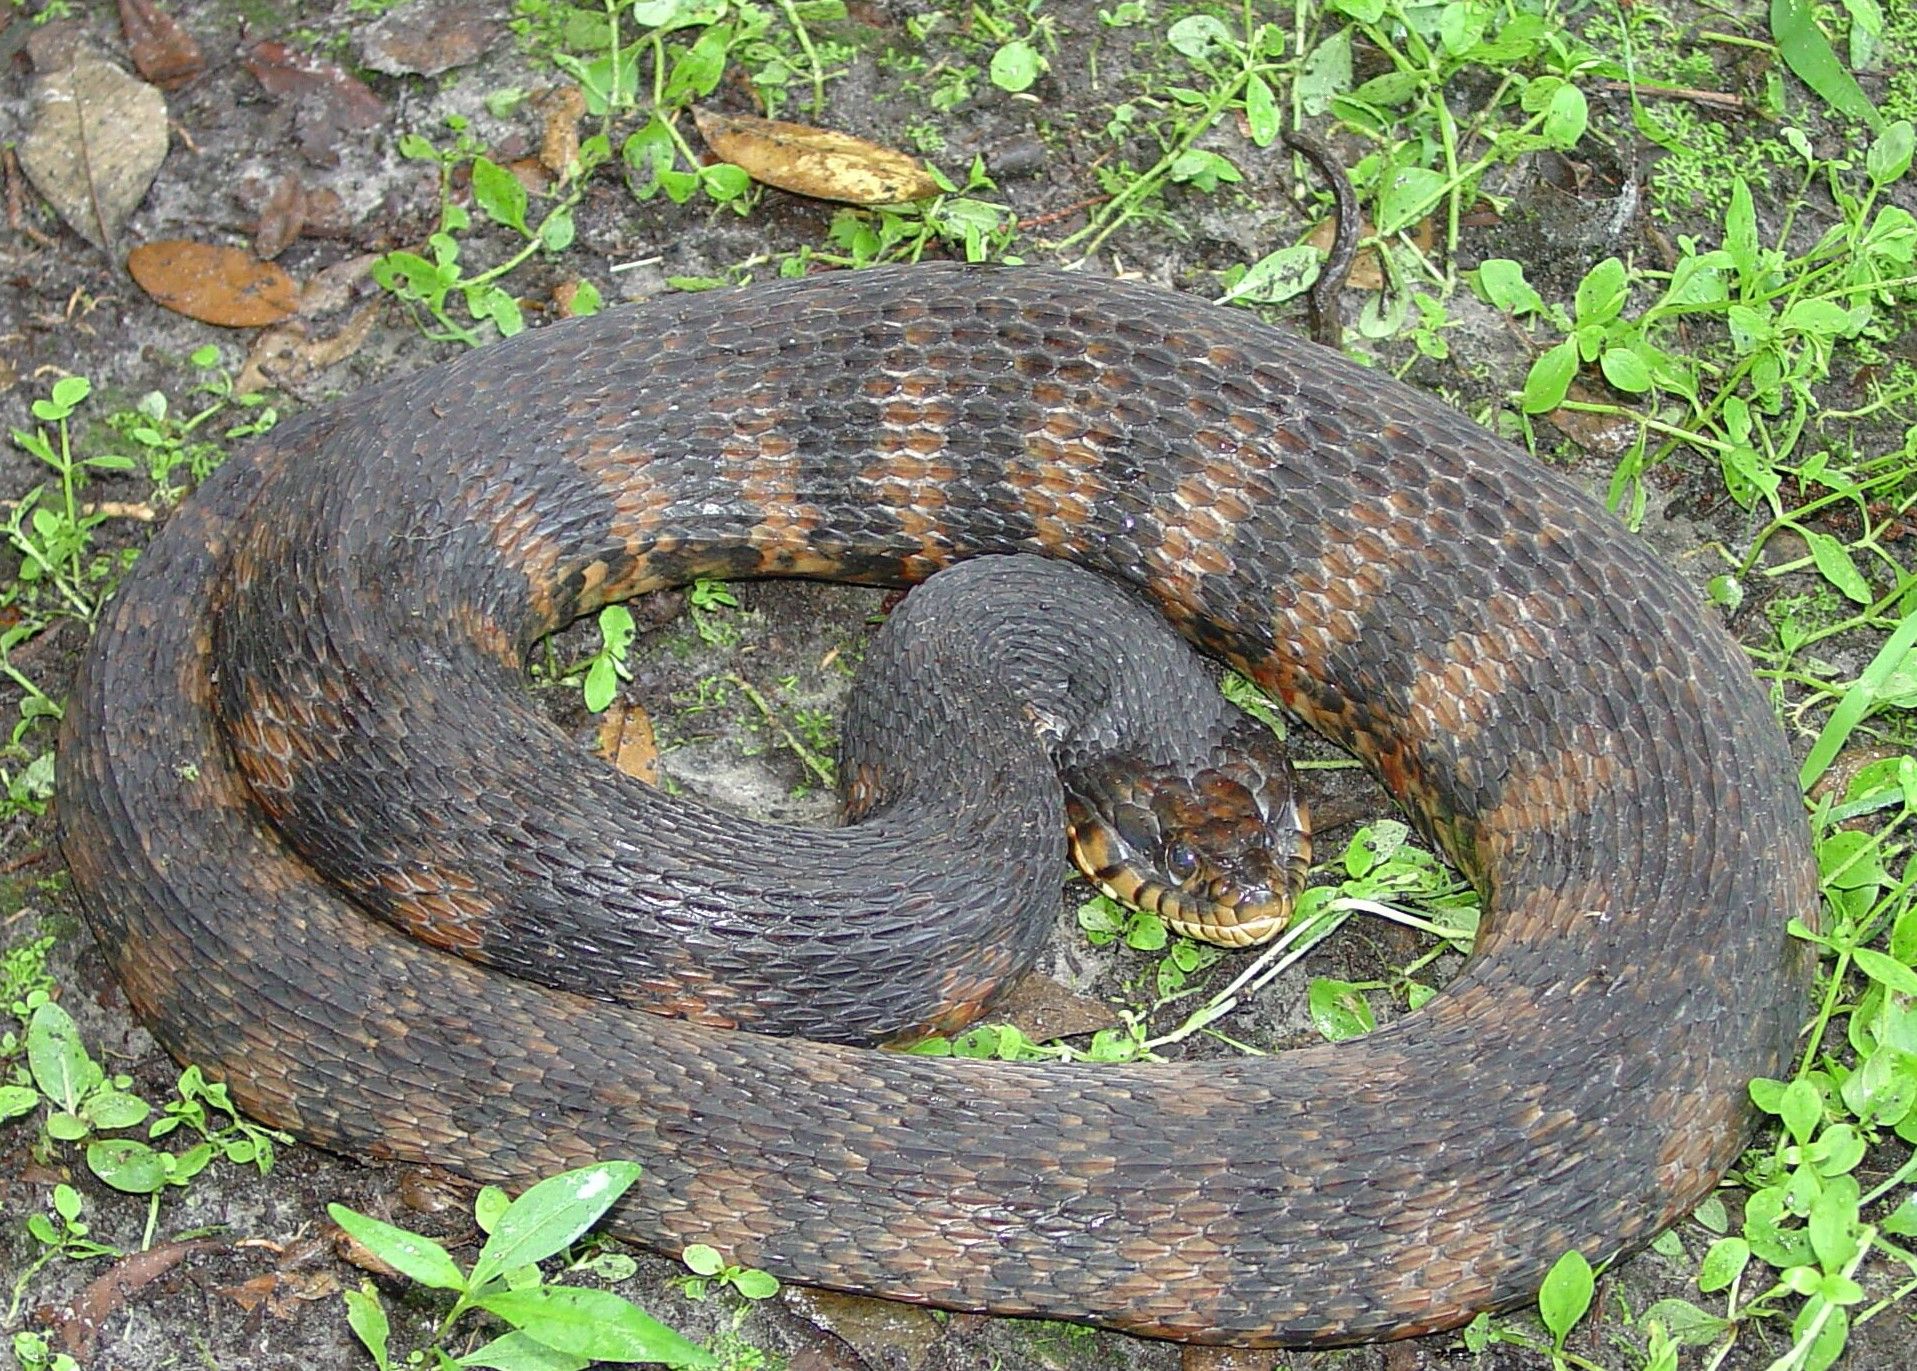 Culebra anillada de agua del sur (adulta) con el patrón anillado típico. Esta serpiente se siente amenazada y ha aplanado su cabeza e hinchado su cuerpo para aparentar mayor tamaño y parecer más intimidante.